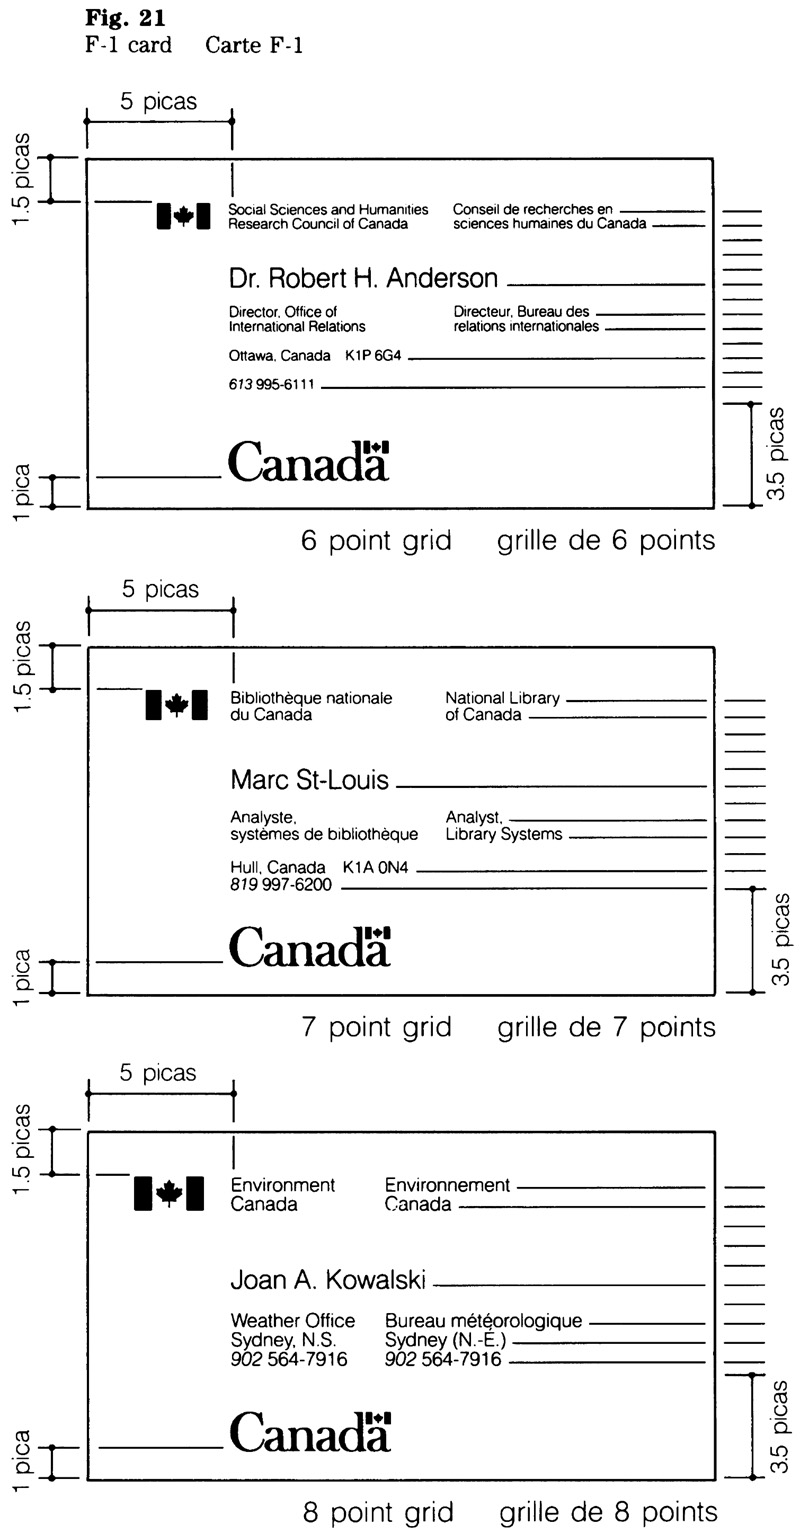 Figure 21 : Carte F-1